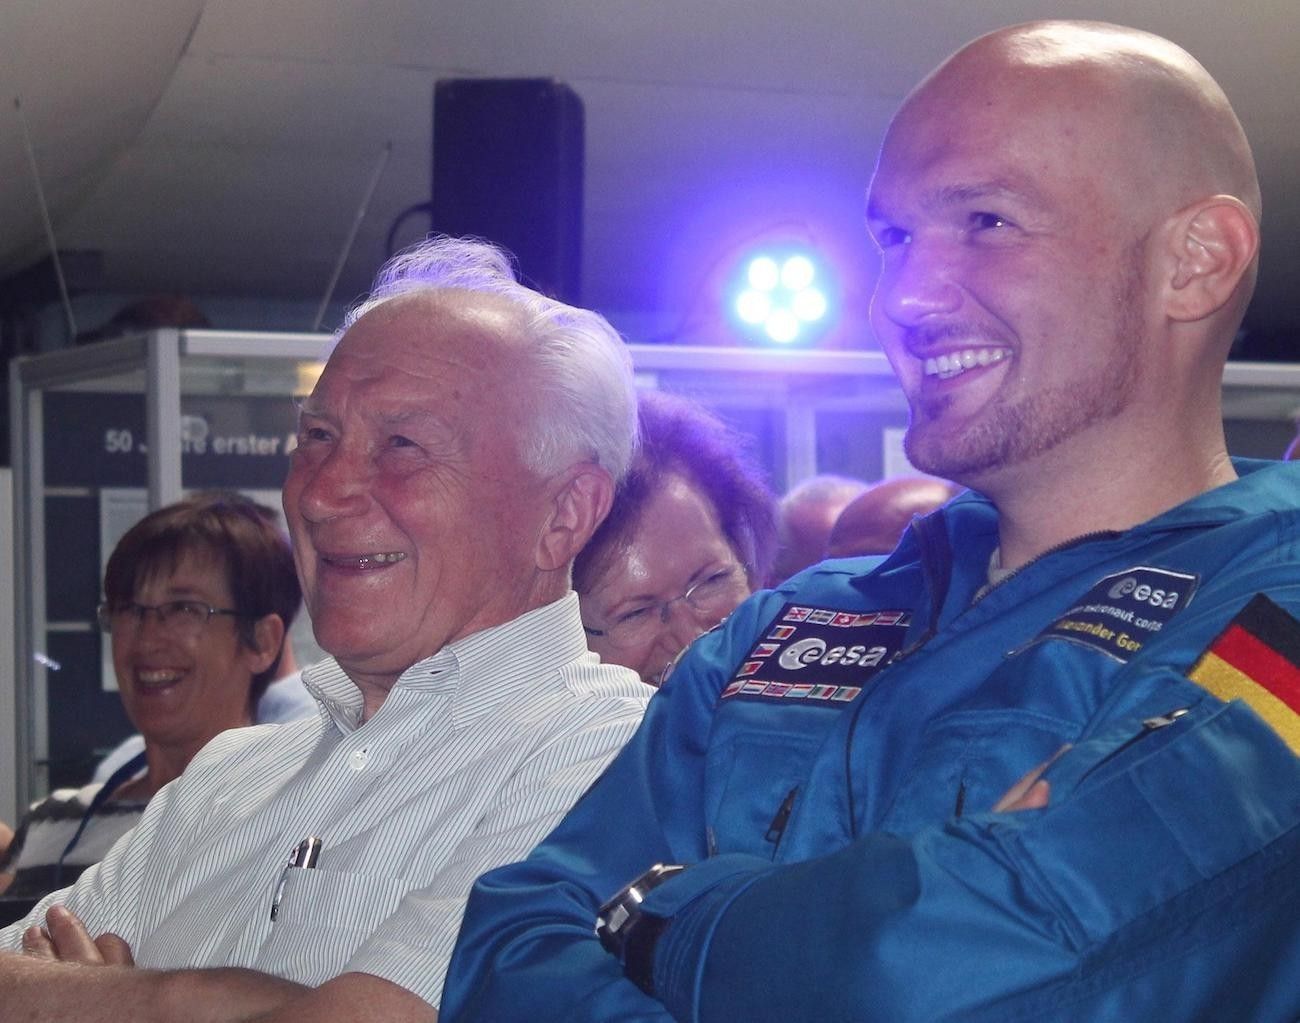 Dwa pokolenia niemieckich astronautów na jednym zdjęciu - z lewej Sigmund Jähn, z prawej natomiast Alexander Gerst, dwukrotny uczestnik misji na ISS z ramienia ESA. Fot. dlr.de